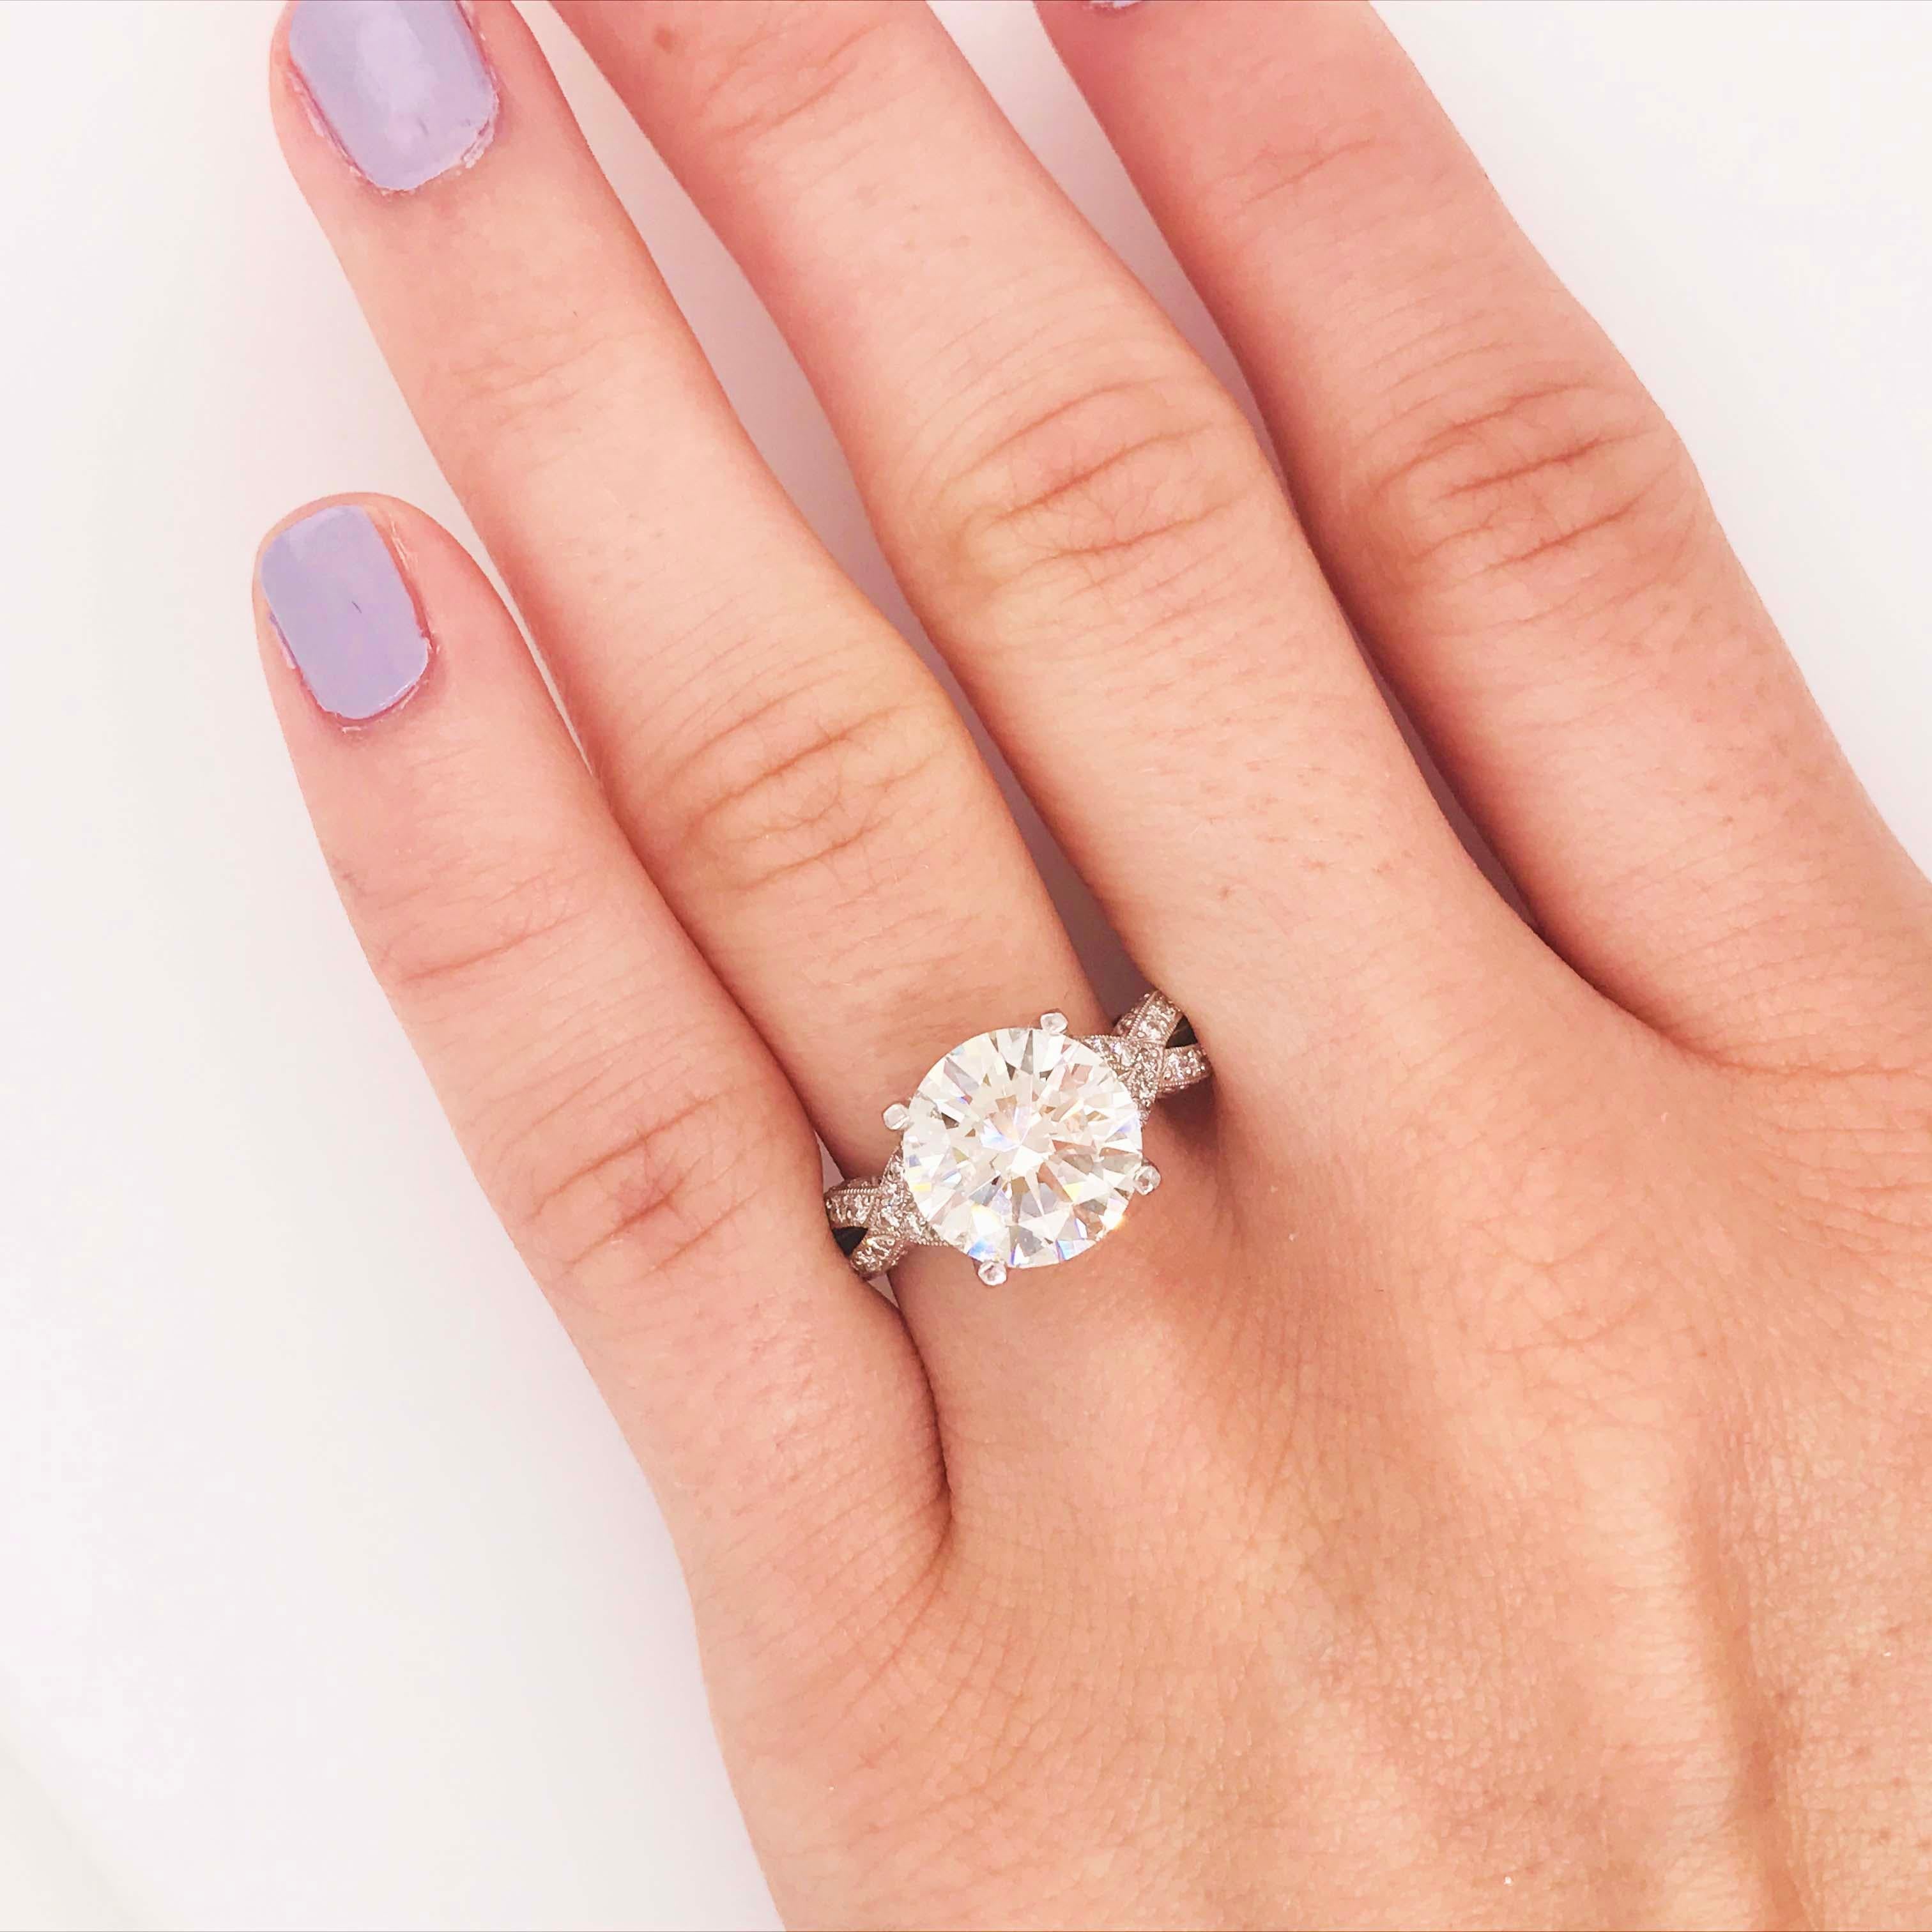 Dieser Tacori Royal T Ring aus Platin und Diamanten ist eine Ikone!  Es hat eine wunderschöne runde Brillantschliff natürlichen Diamanten, die 4,00 Karat wiegt.  Der Tacori Royal T hat ein Unendlichkeitsdesign auf beiden Seiten des zentralen